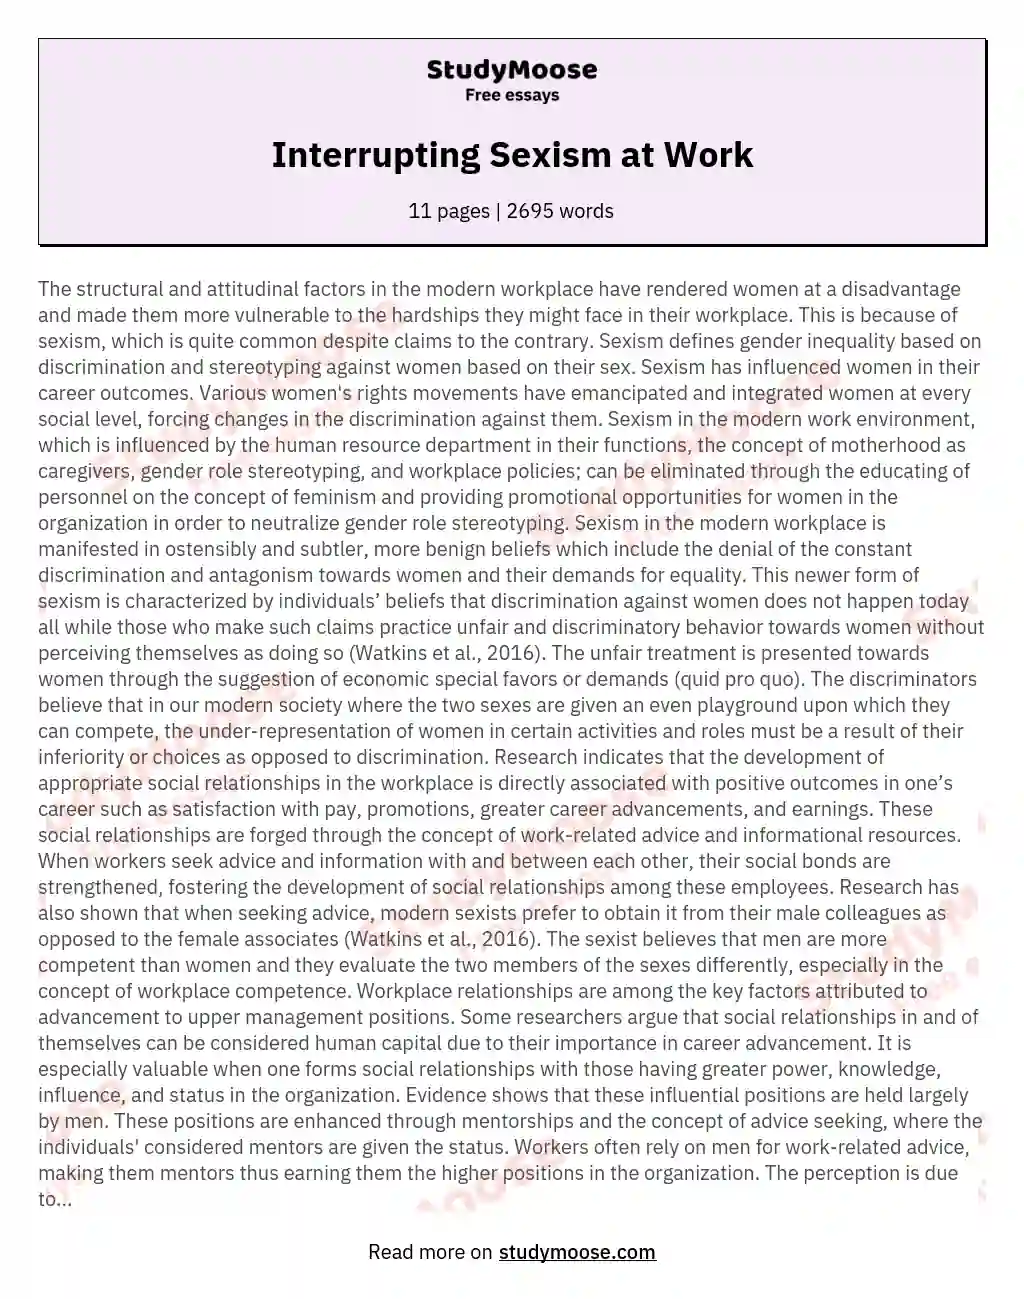 Interrupting Sexism at Work essay